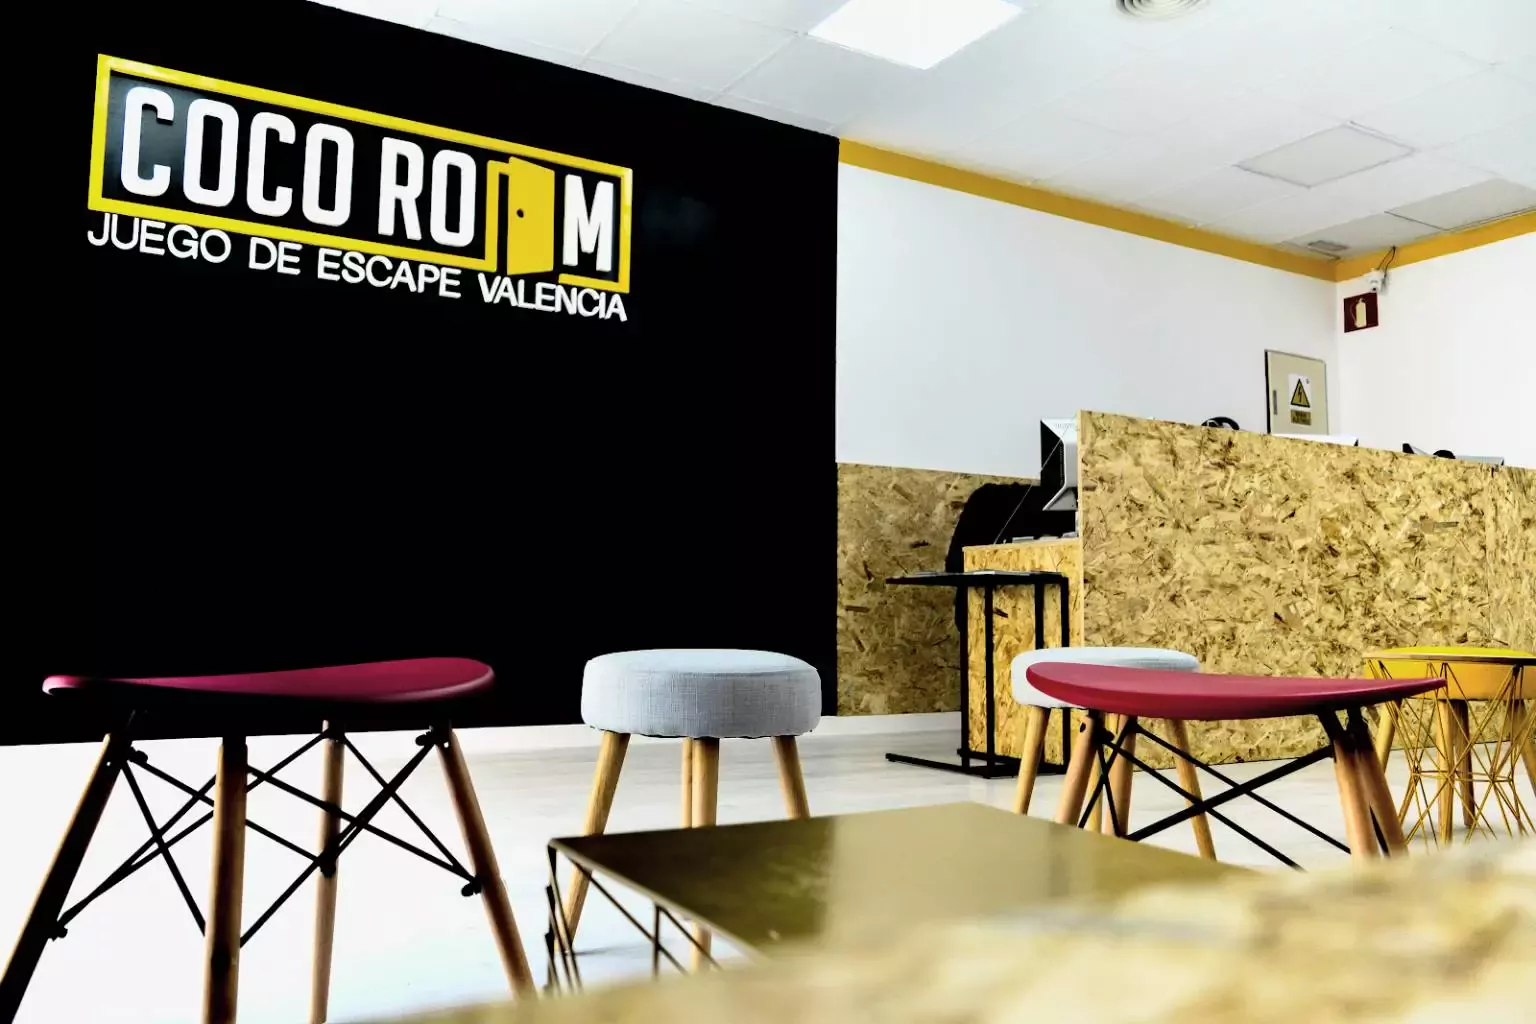 6. Escape Room  - Coco Room Valencia